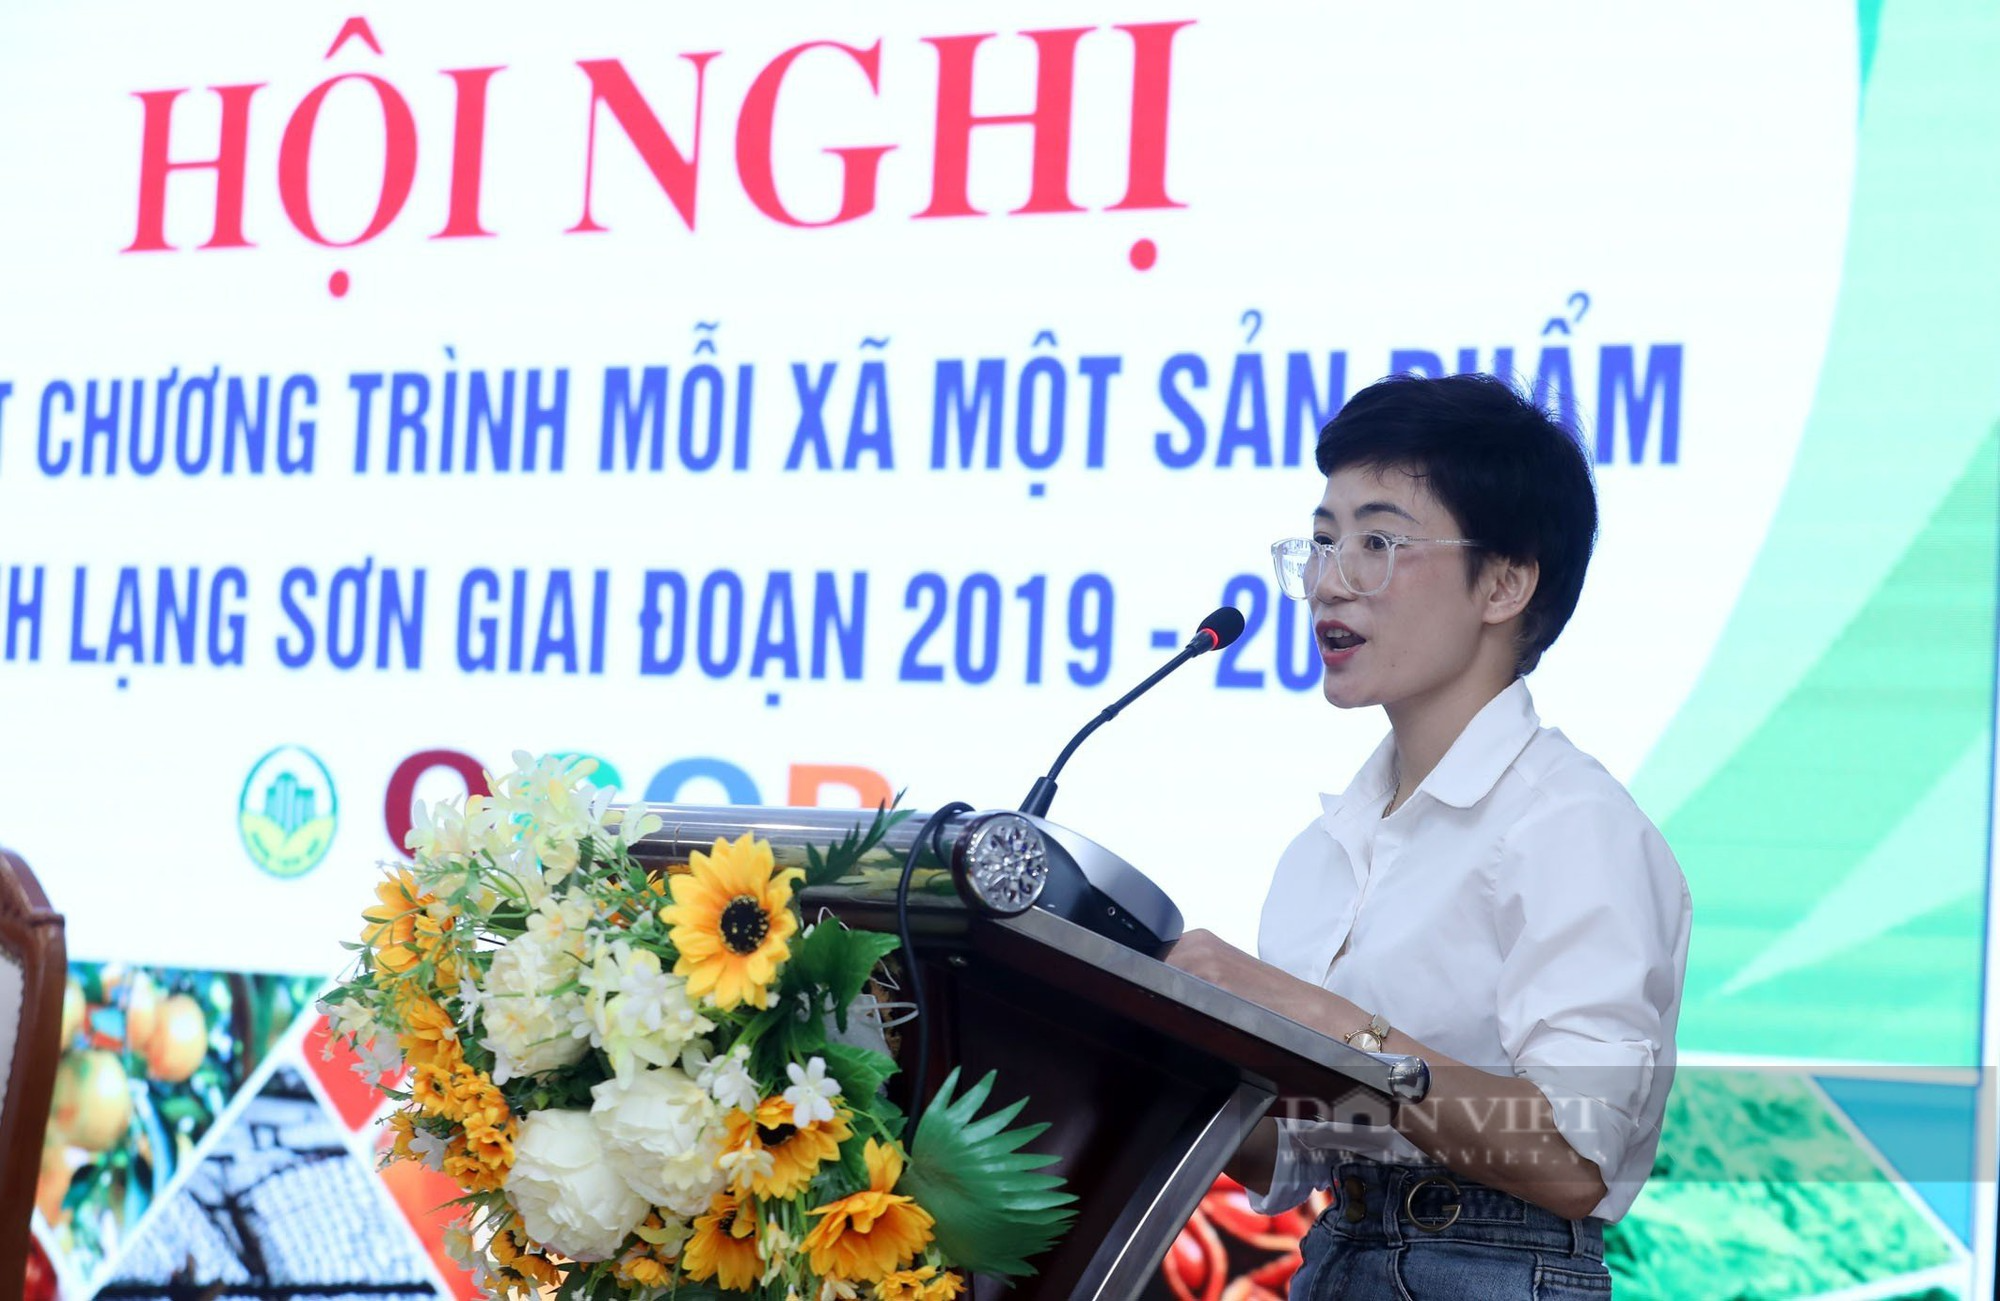 Lạng Sơn: Chủ tịch tỉnh đồng hành với chương trình mỗi xã một sản phẩm Ocop - Ảnh 4.